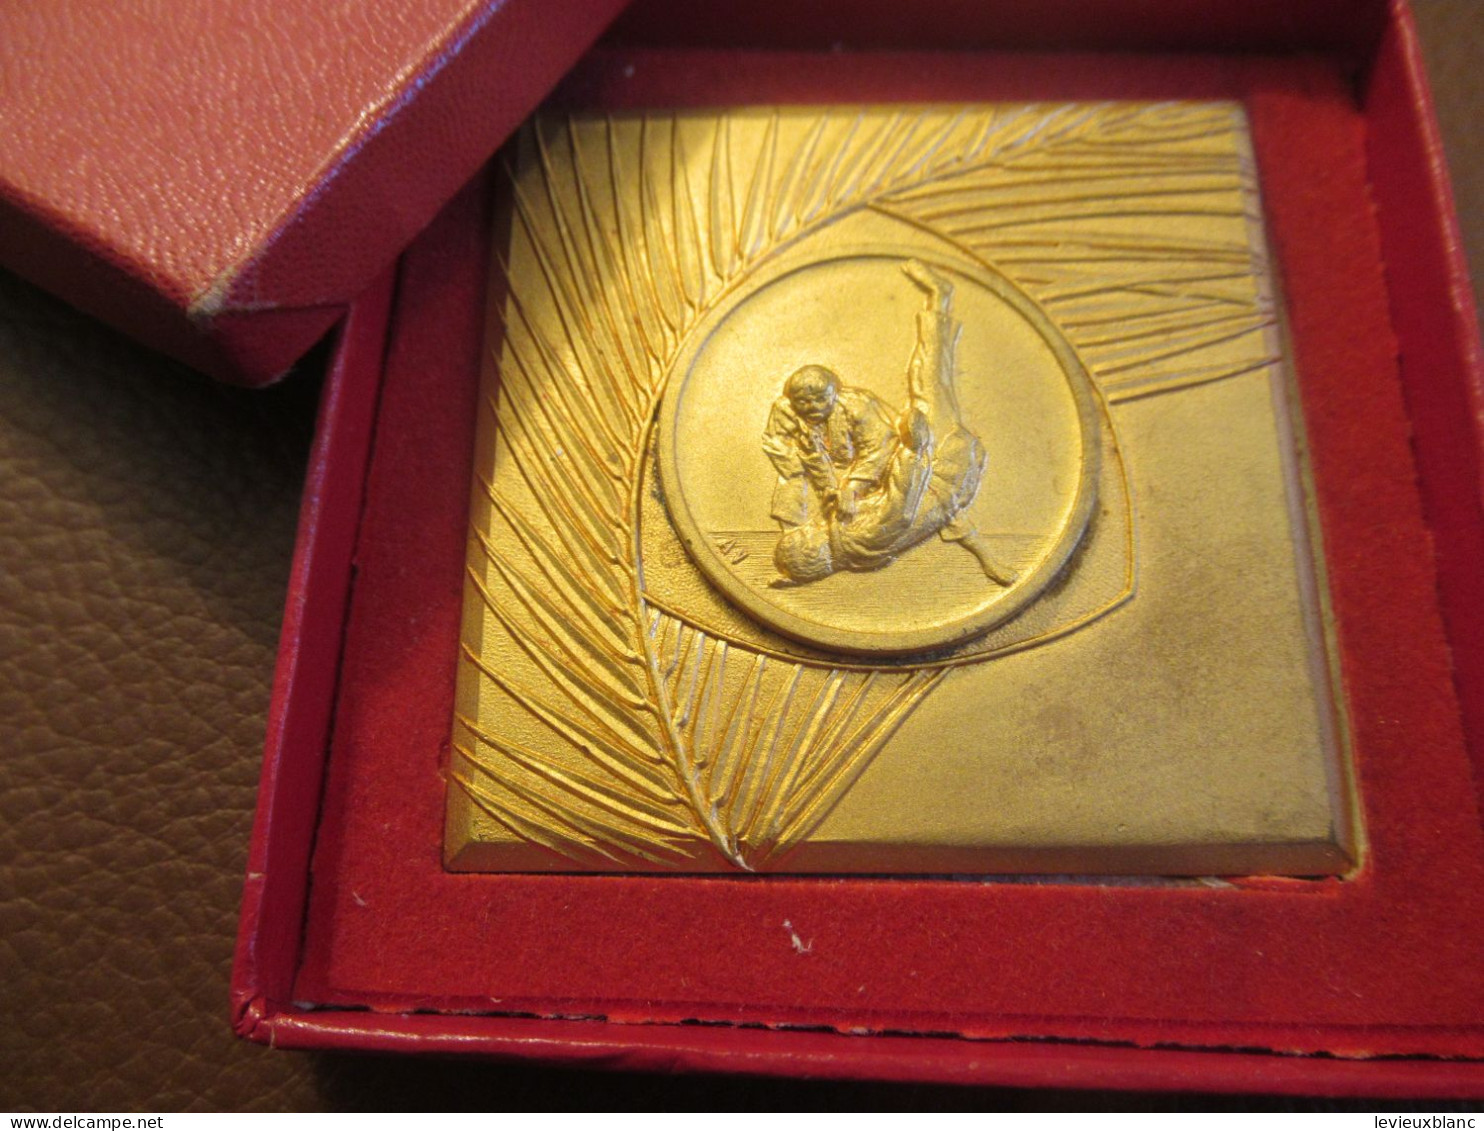 JUDO / Médaille De Compétition / Attribuée/ Bronze Doré/ Chpt Espoirs 78 Légers 1er  /1975 SPO463 - Kampfsport